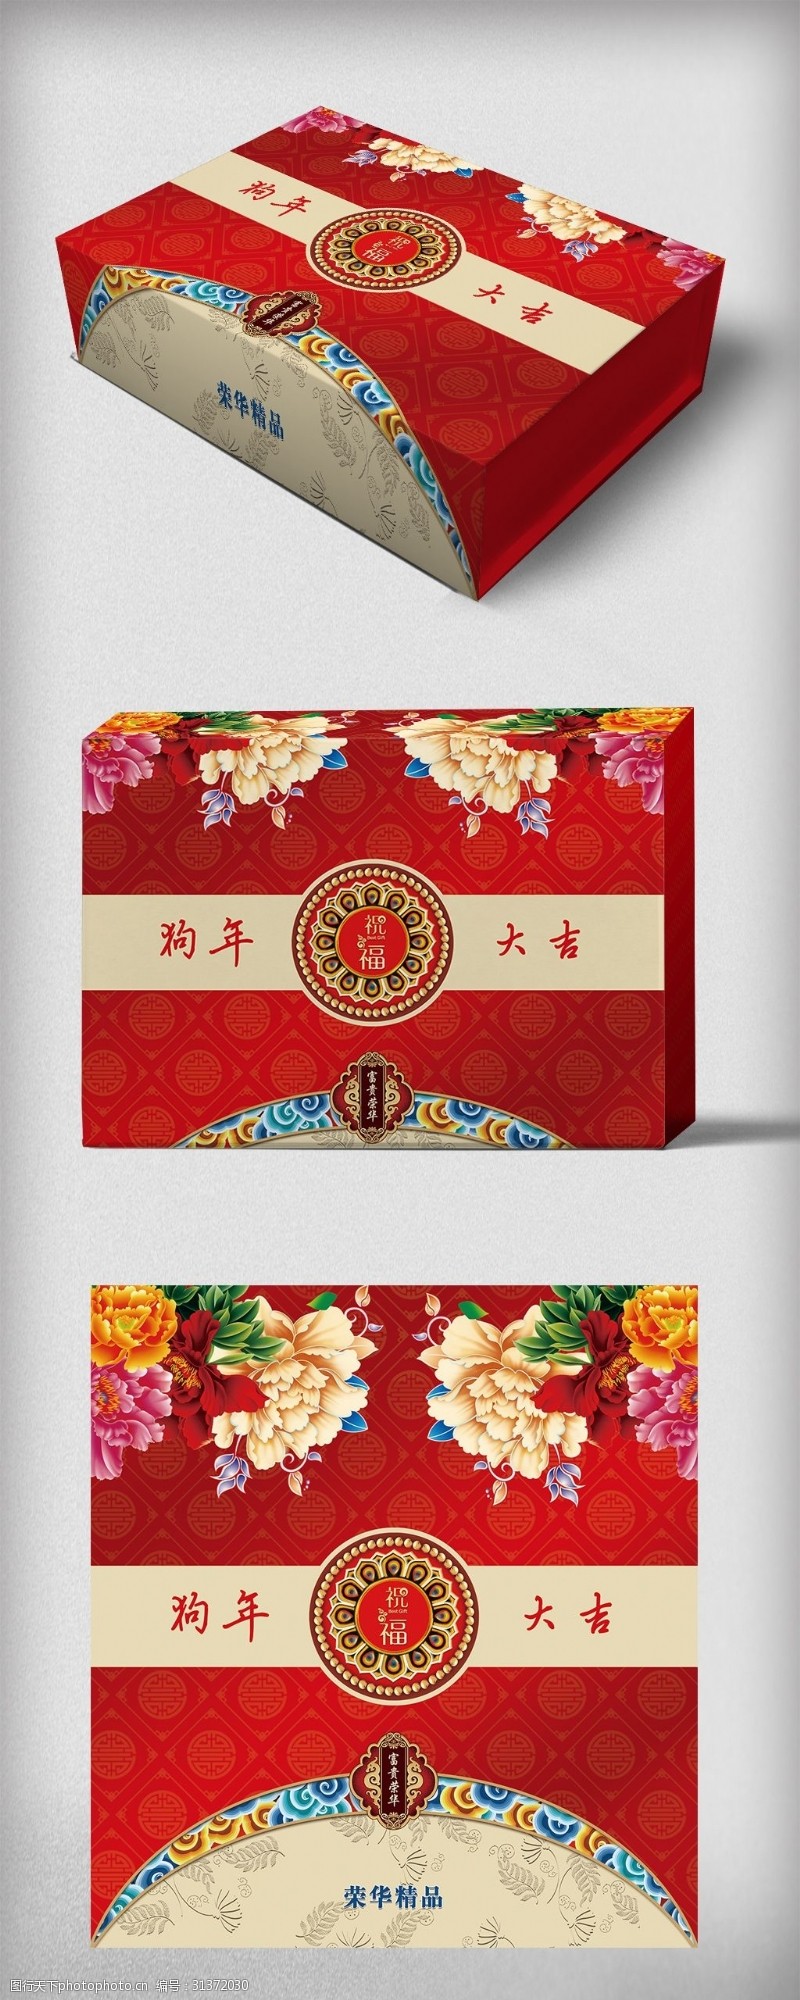 中国风背景新年送礼礼盒包装设计